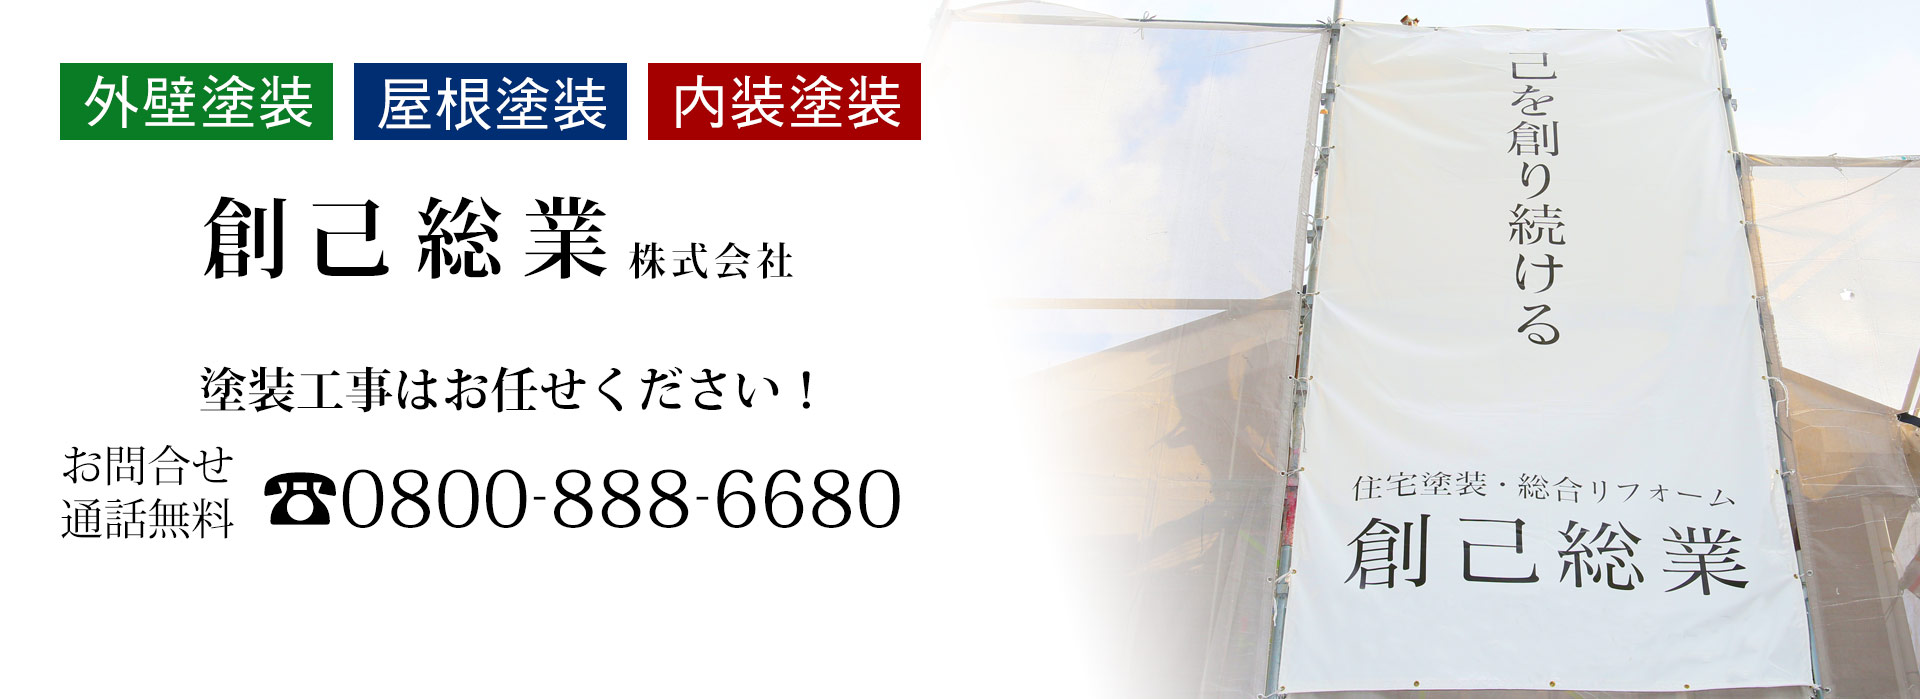 神奈川県相模原市にて屋根・破風板の塗装工事